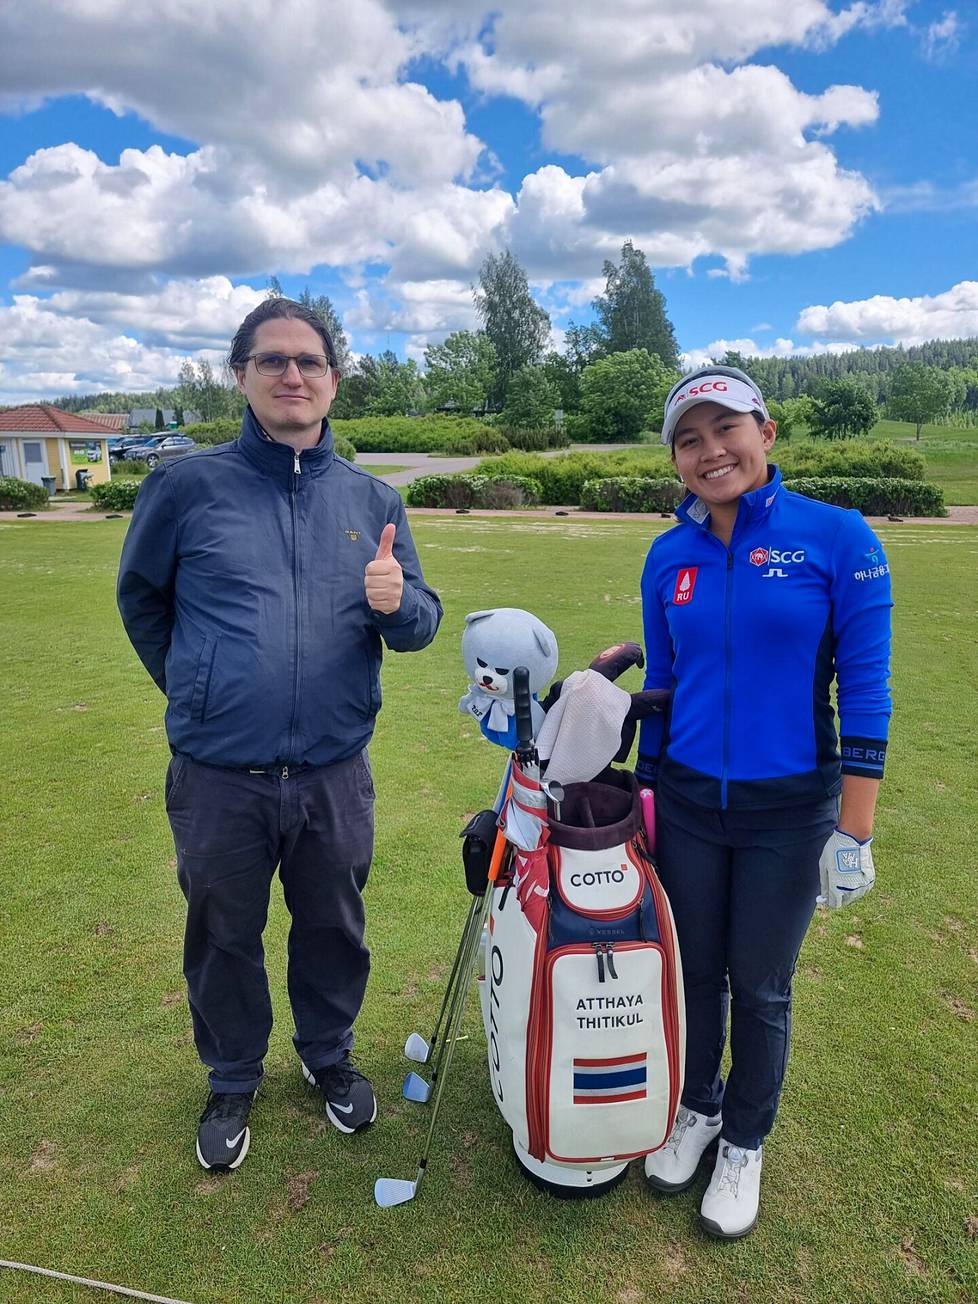 Atthaya Thitikul harjoitteli viime kesänä muun muassa Hillsin golfkentällä Vihdissä, ja lähistöllä asuva Juha Ritvala oli kannustamassa.